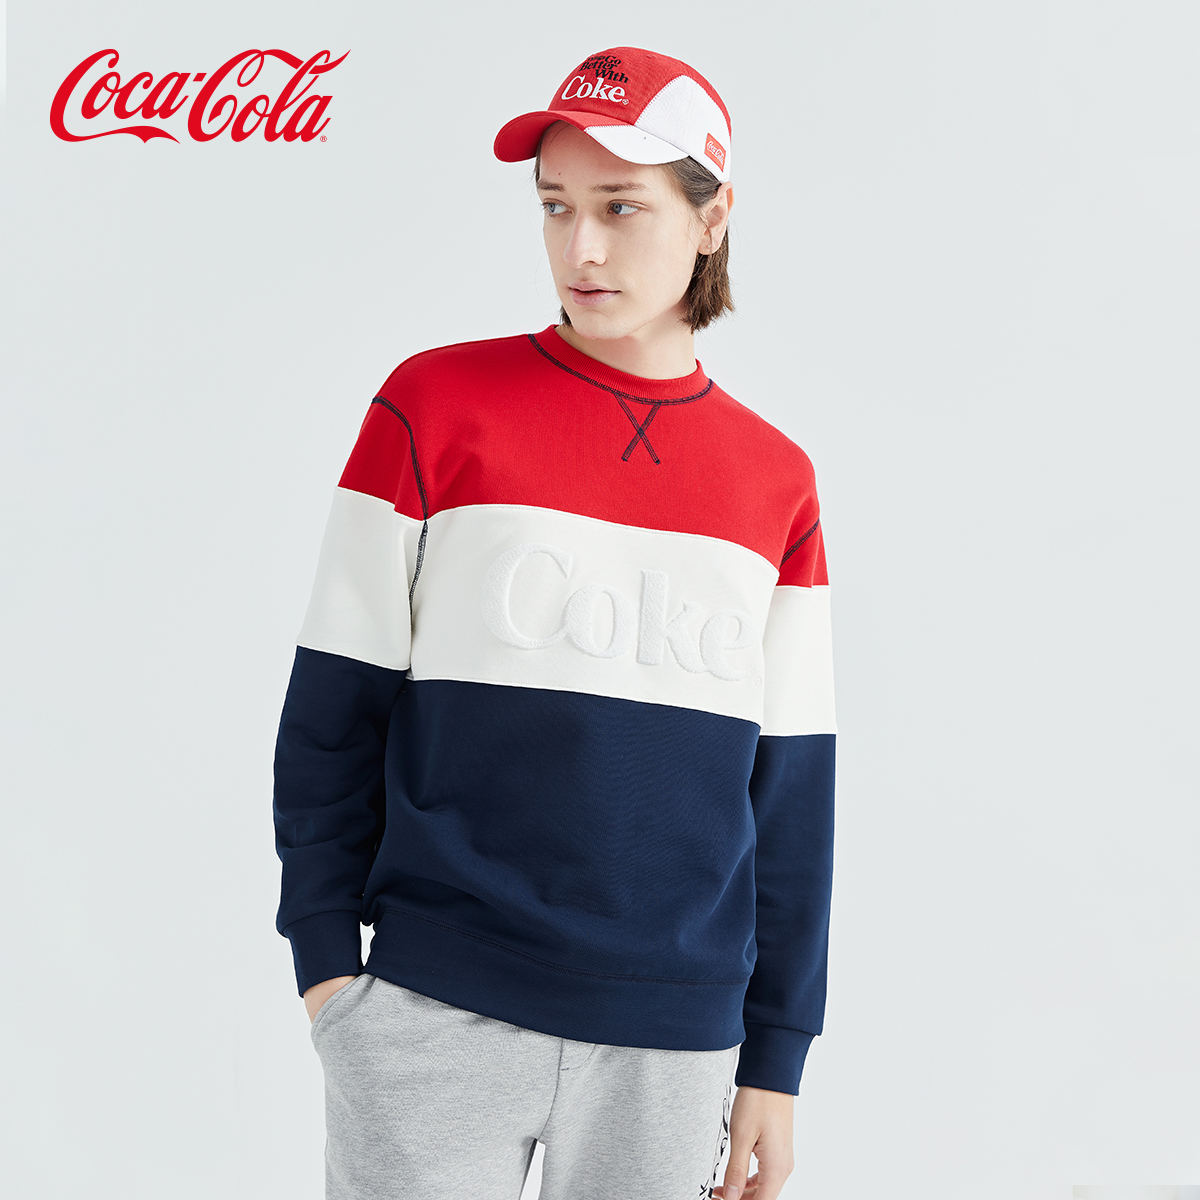 Coca-Cola可口可乐官方卫衣套头撞色条纹毛巾绣LOGO休闲潮流上衣